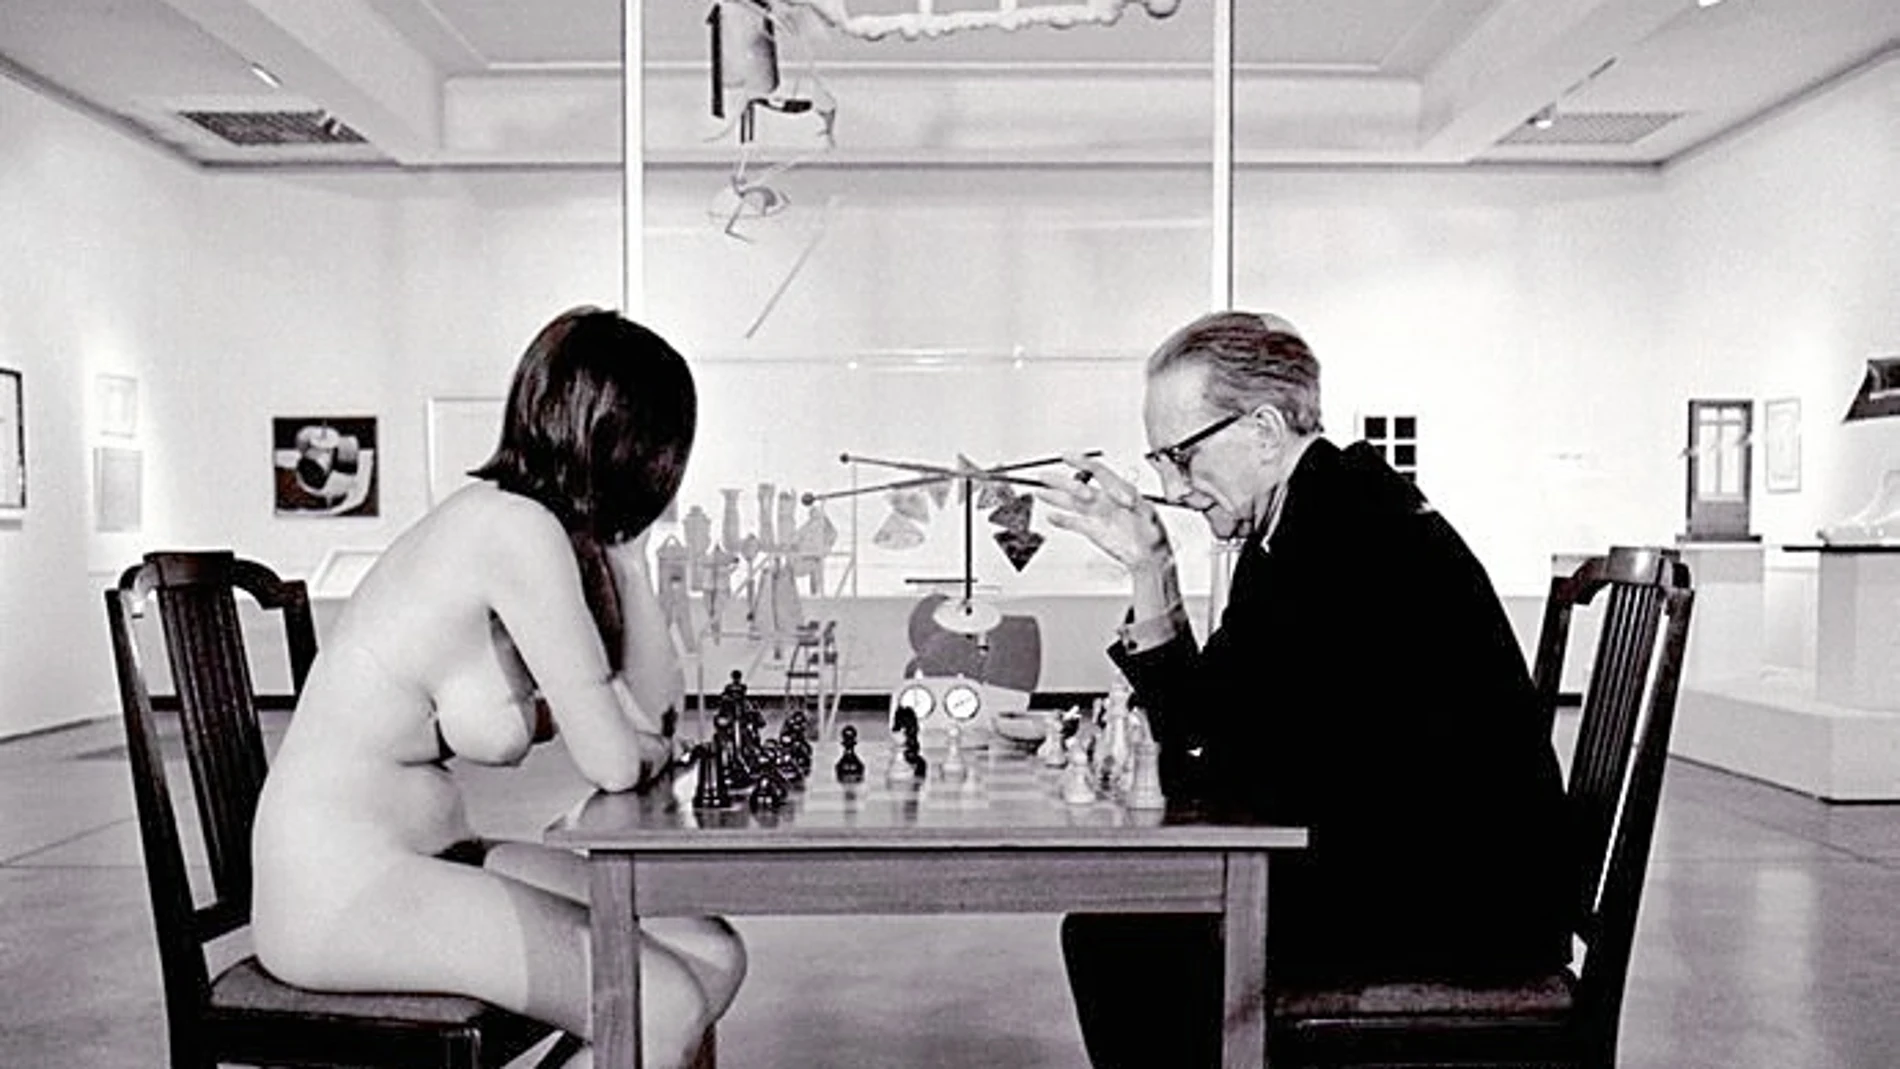 La Fundació Miró se centrará en los vínculos del ajedrez en la obra de Marcel Duchamp, con numerosas obras nunca expuestas anteriormente en nuestro país